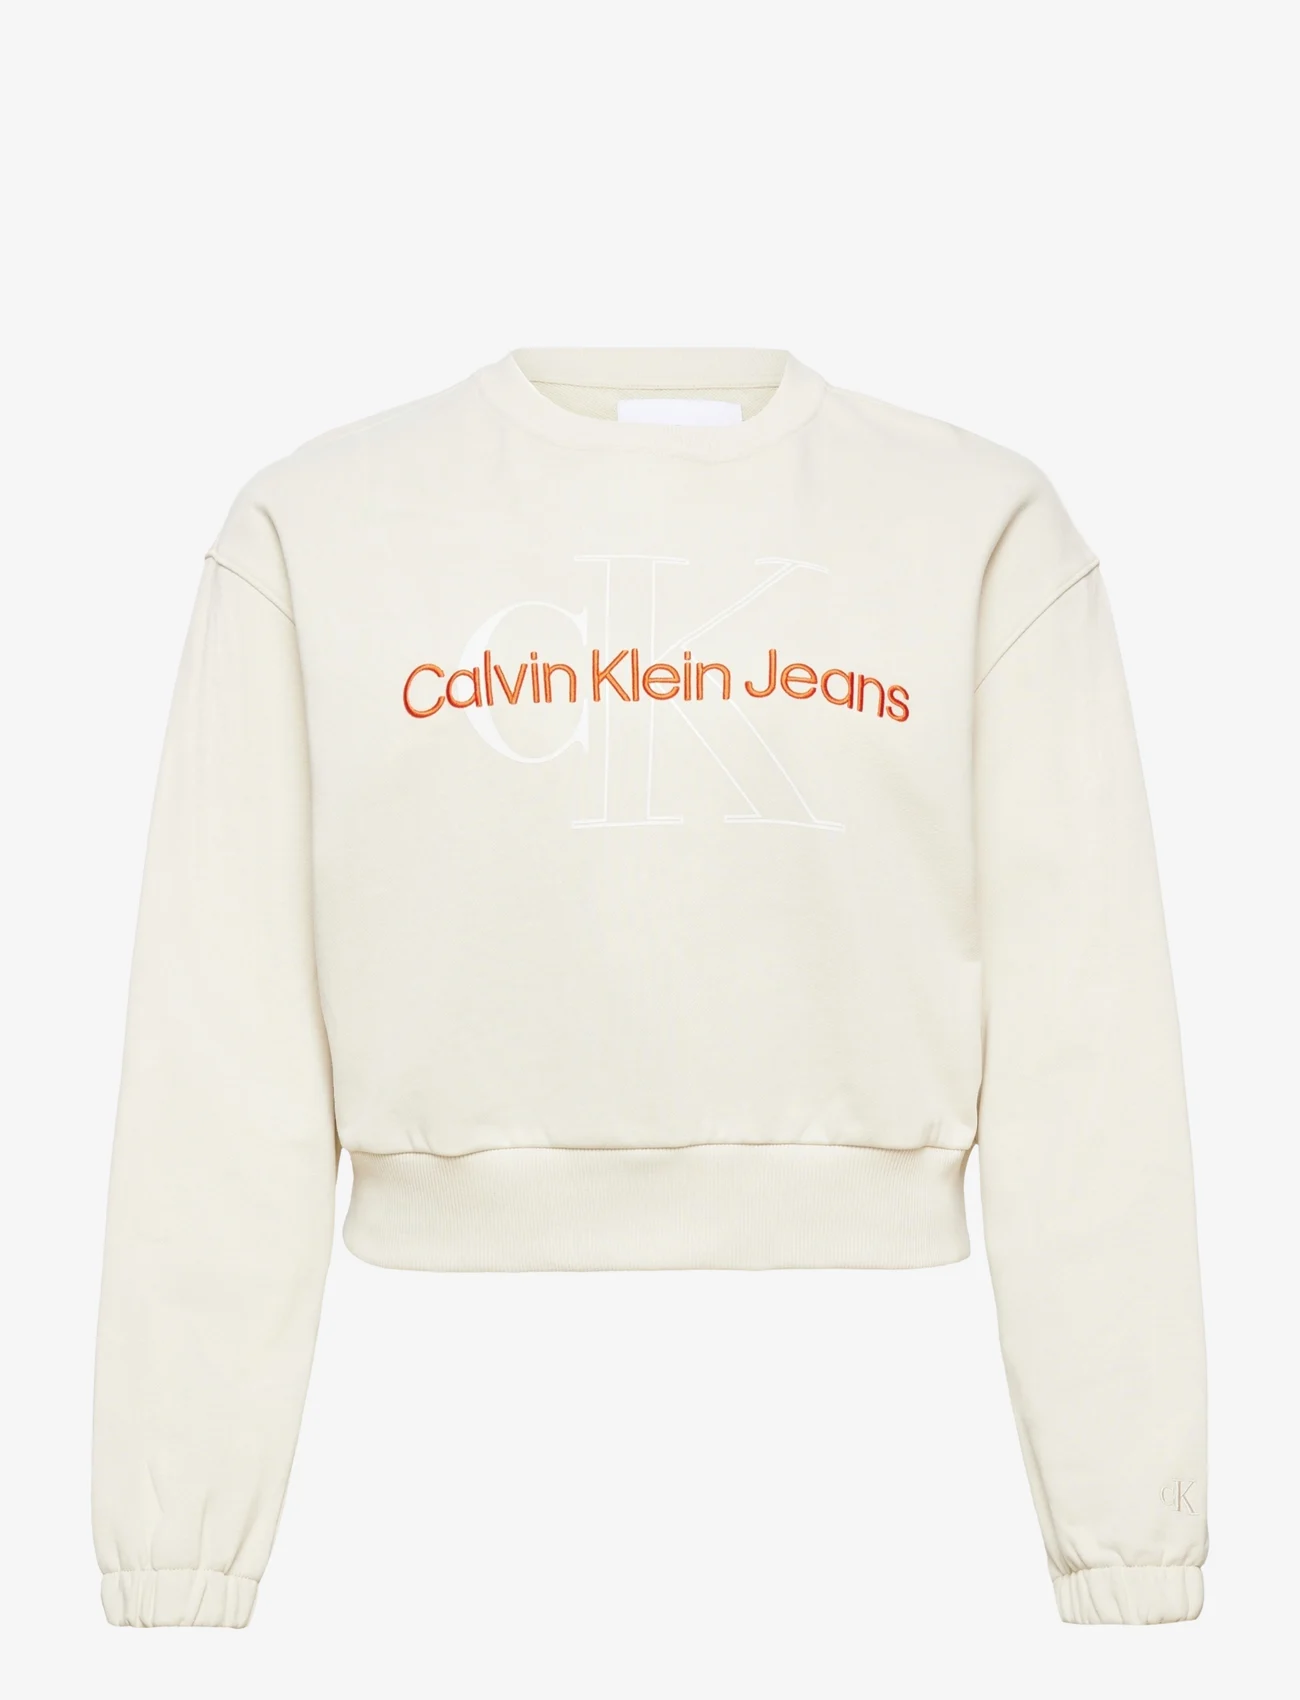 Calvin Klein Jeans - PLUS TWO TONE MONOGRAM CREW NECK - plus size - eggshell - 0